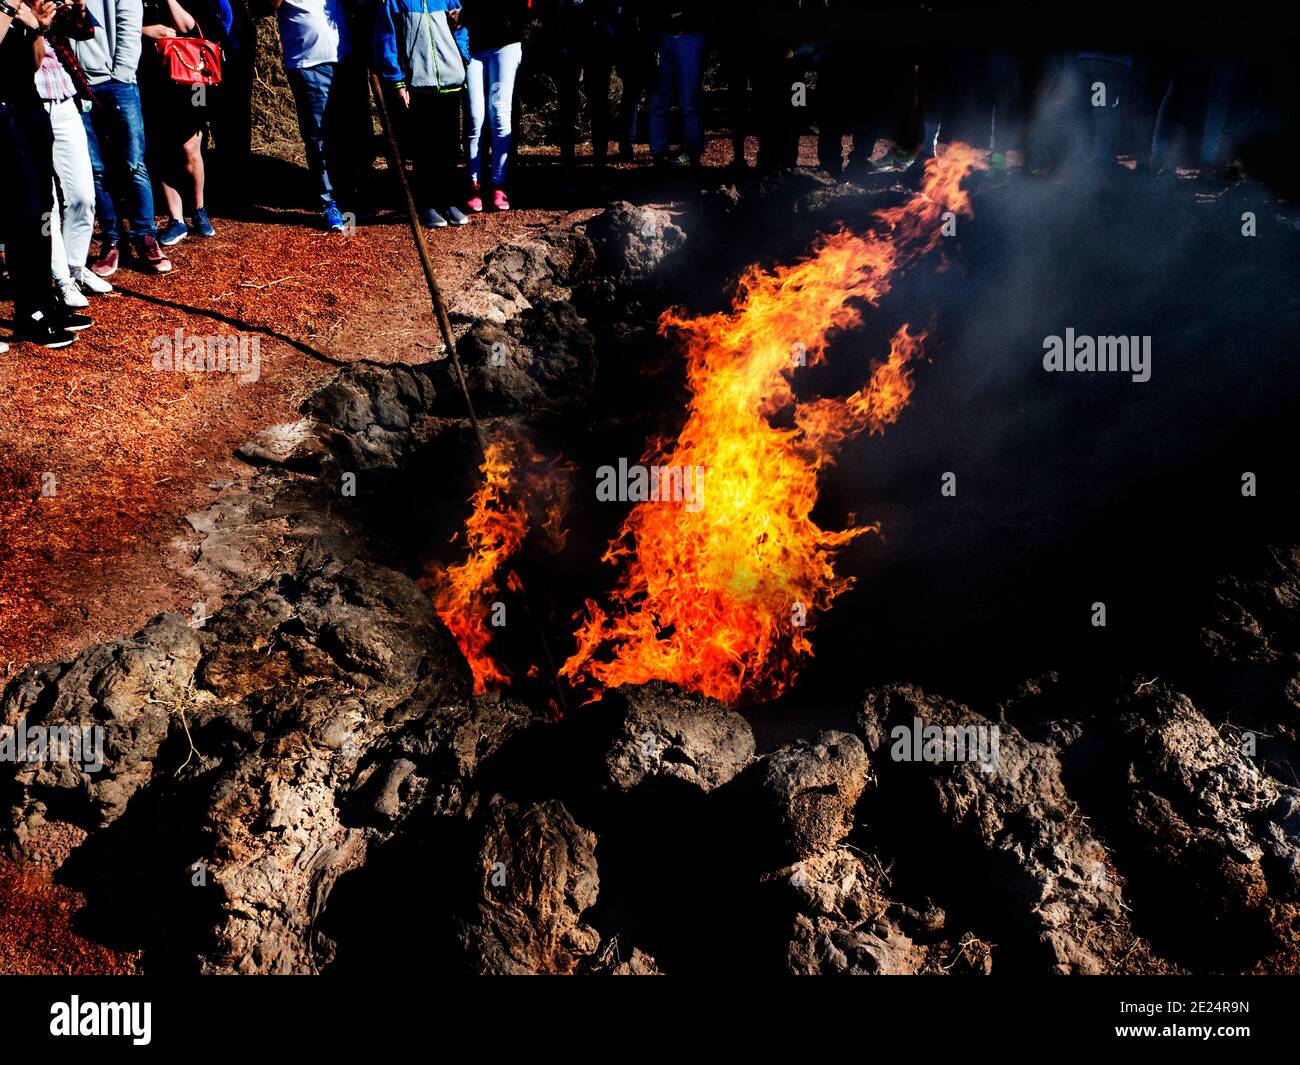 Gruppo di persone in piedi intorno a un incendio in un cratere vulcanico, Lanzarote, Isole Canarie, Spagna Foto Stock